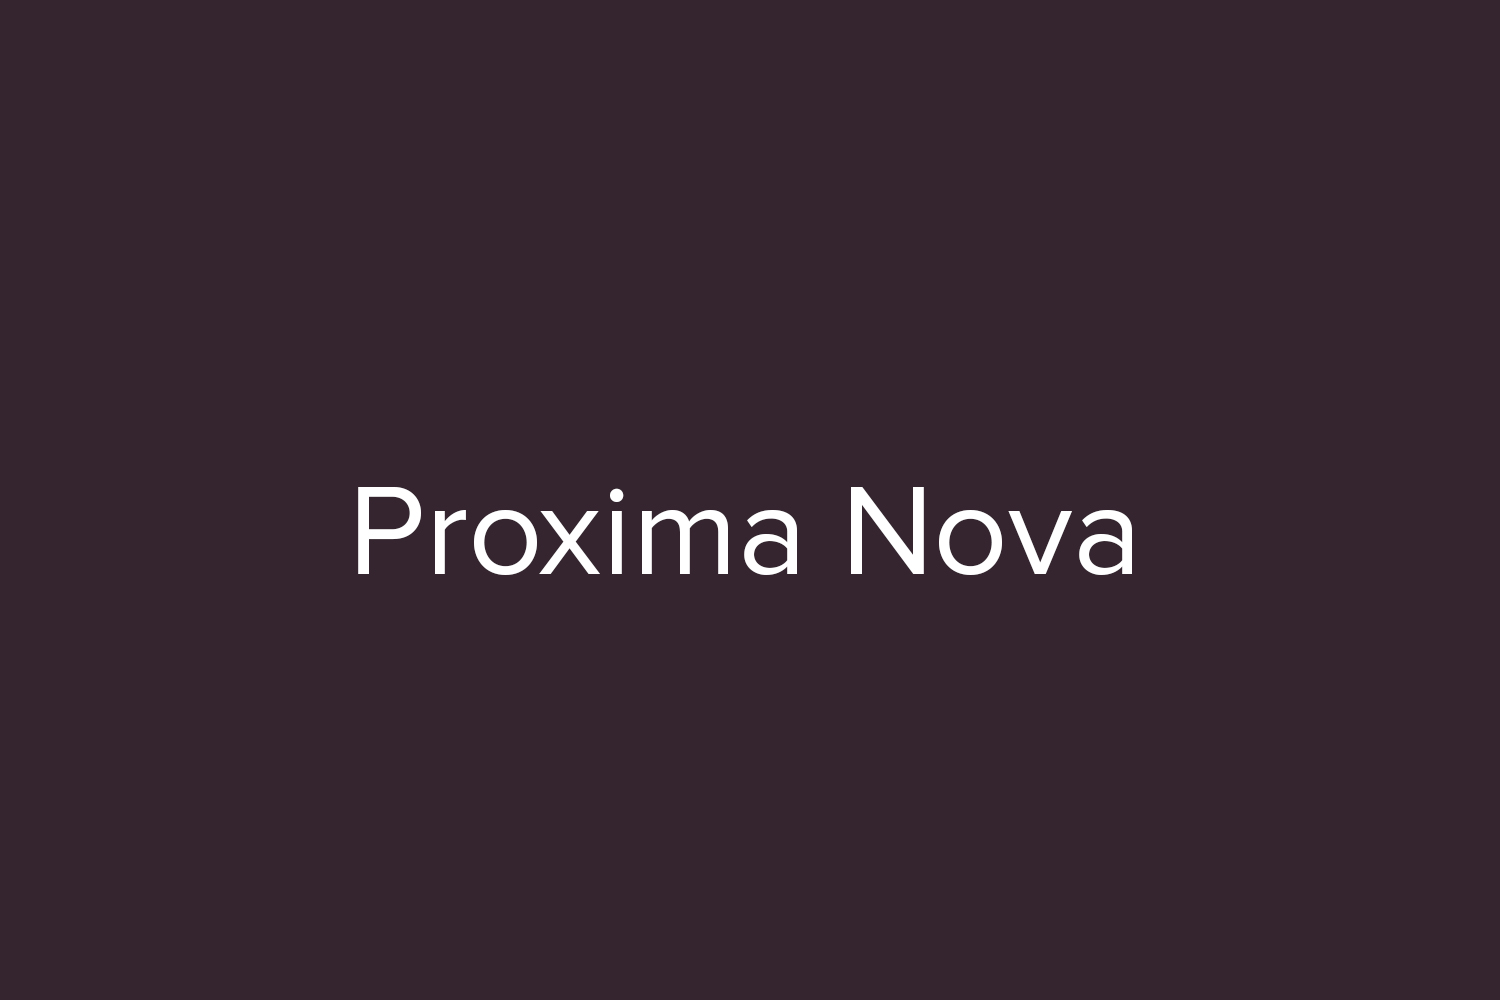 proxima nova download free font